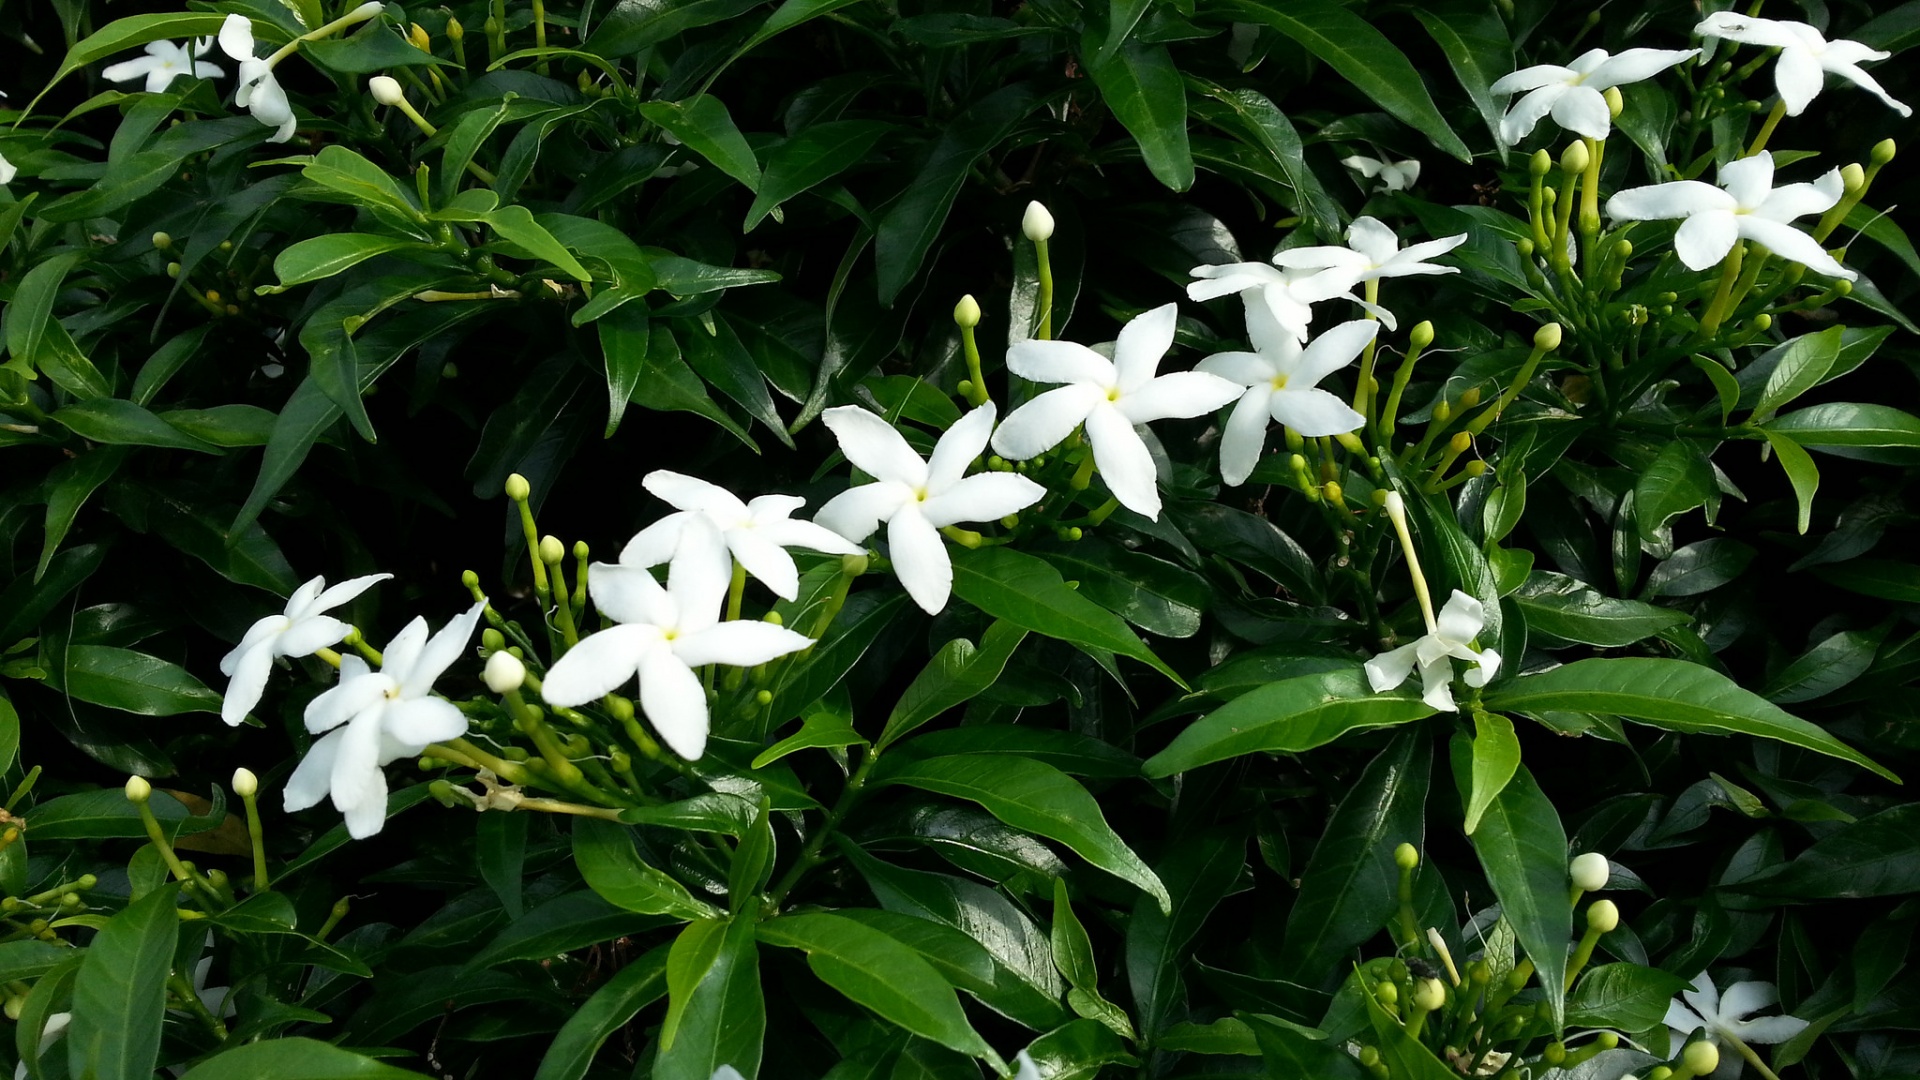 Jazmín estrellado de las flores blancas